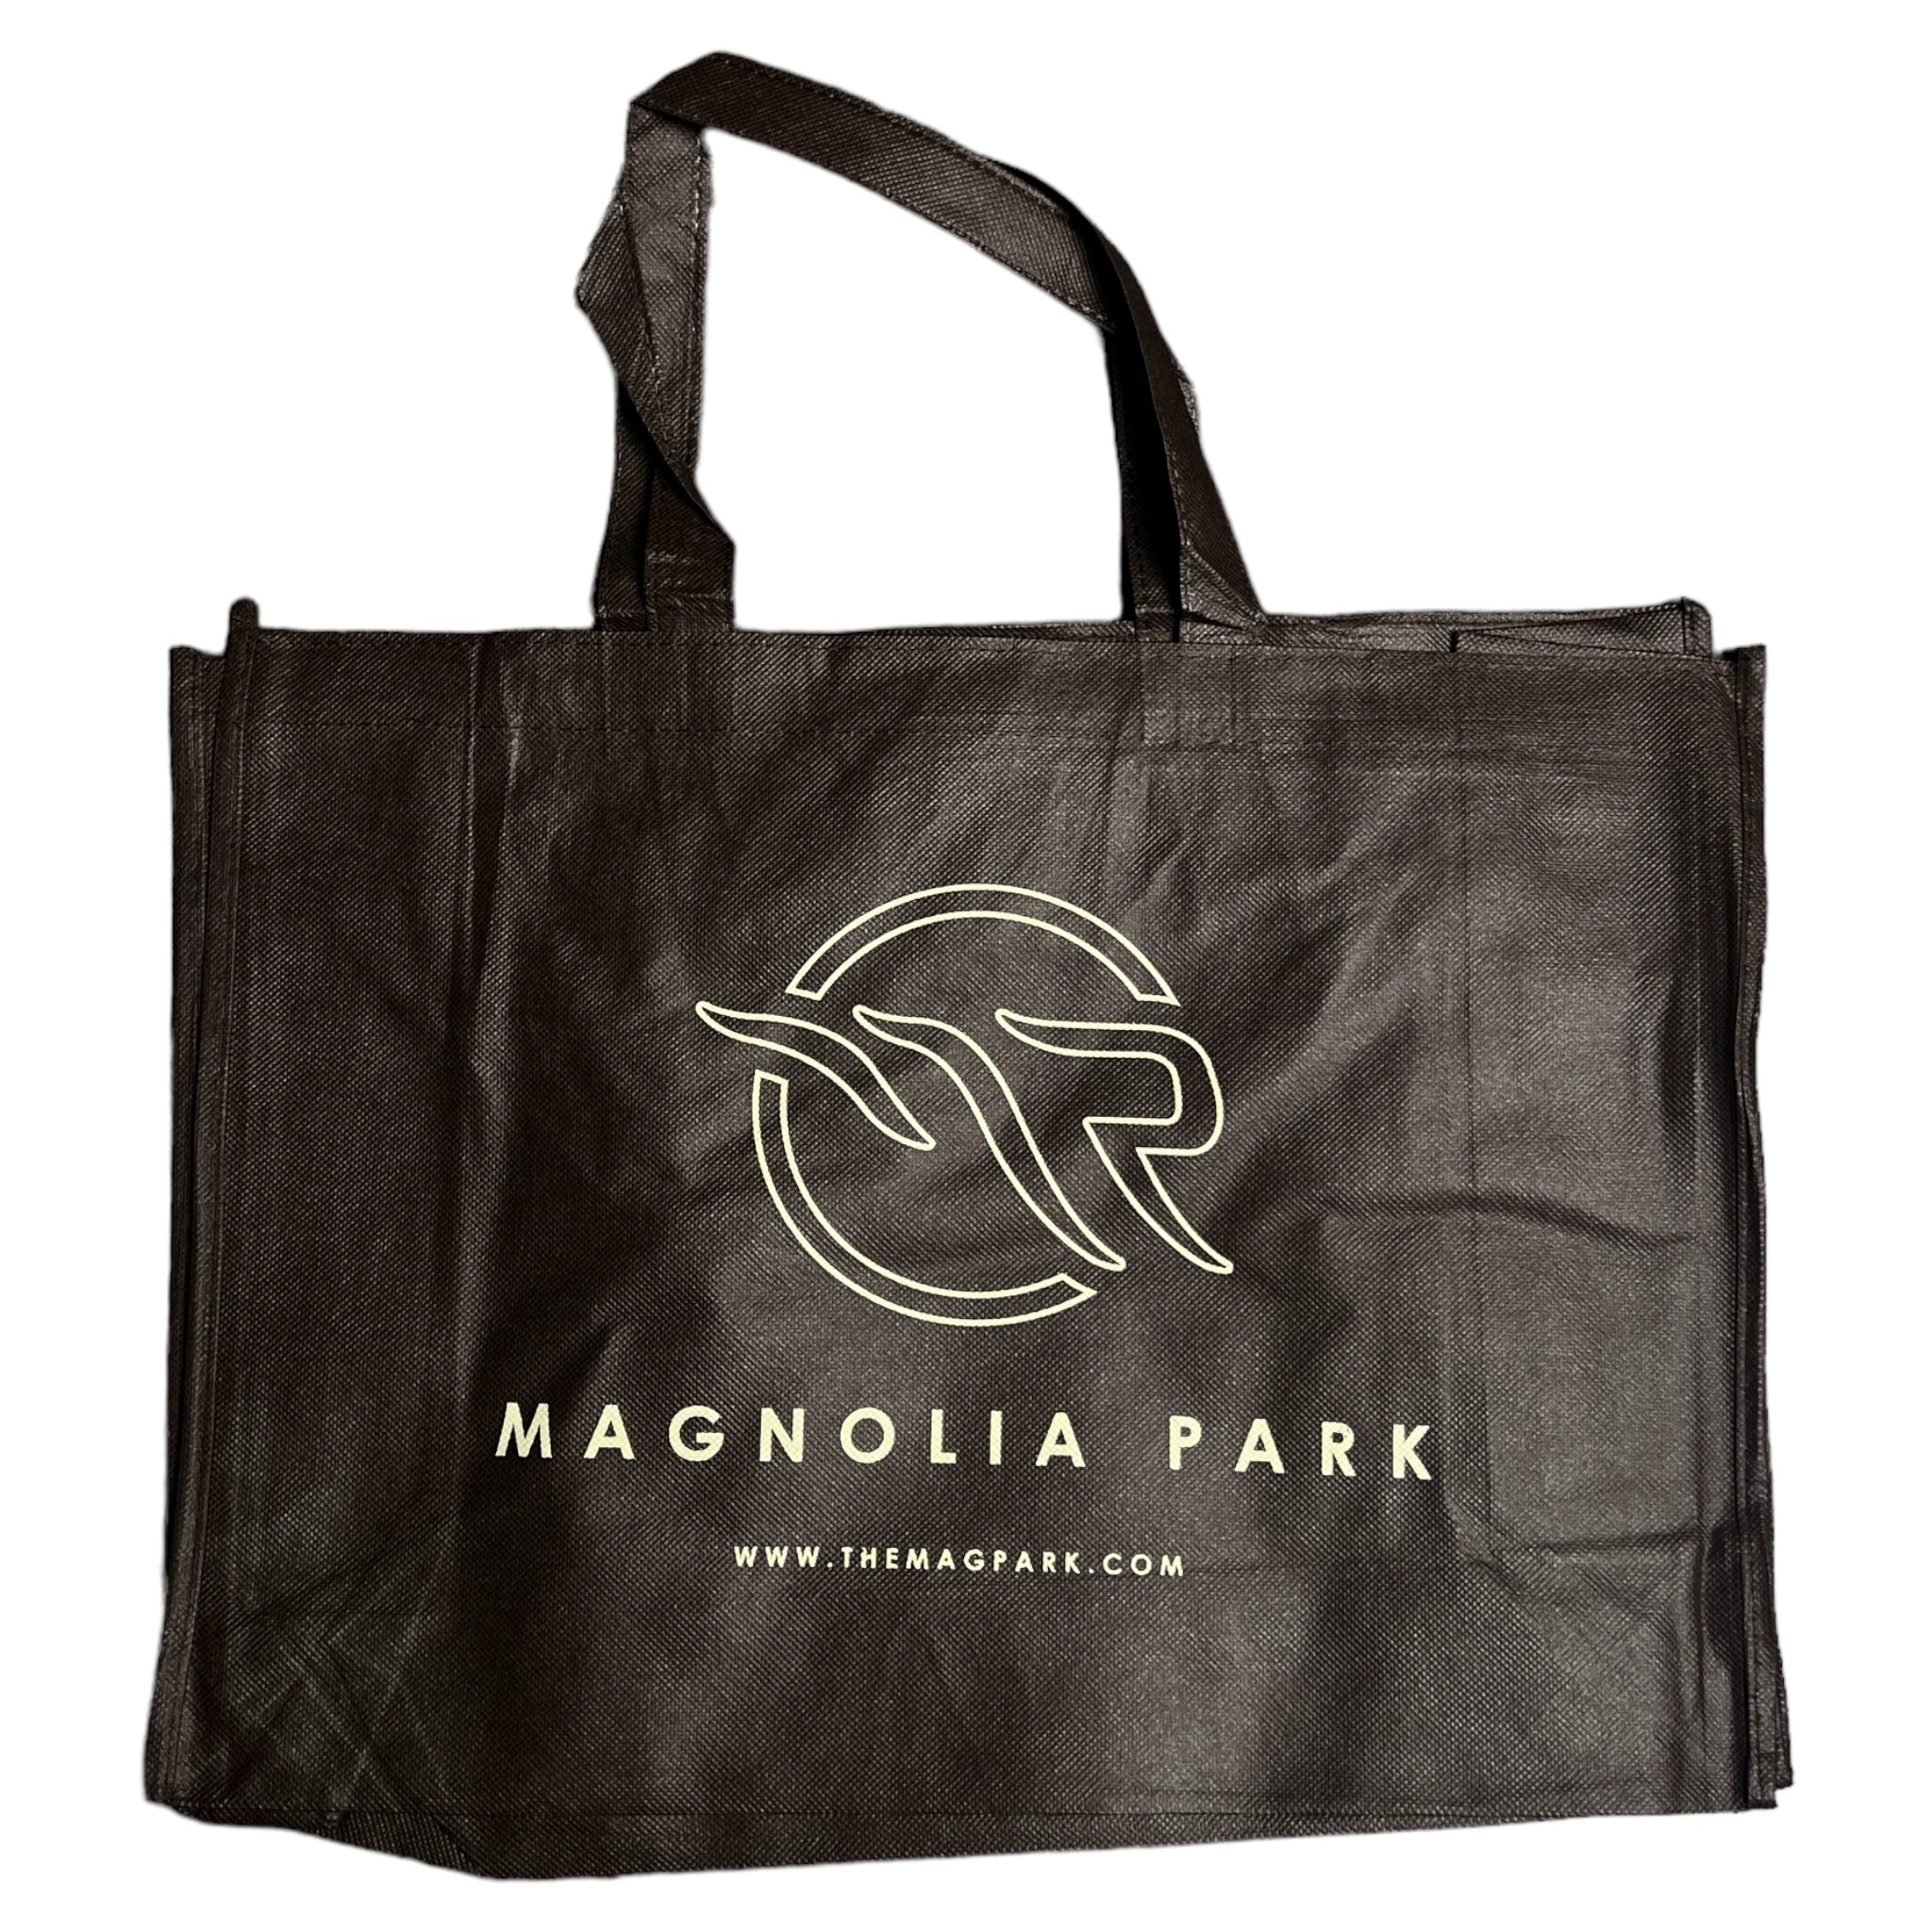 The Magnolia Park Single Tote Bag